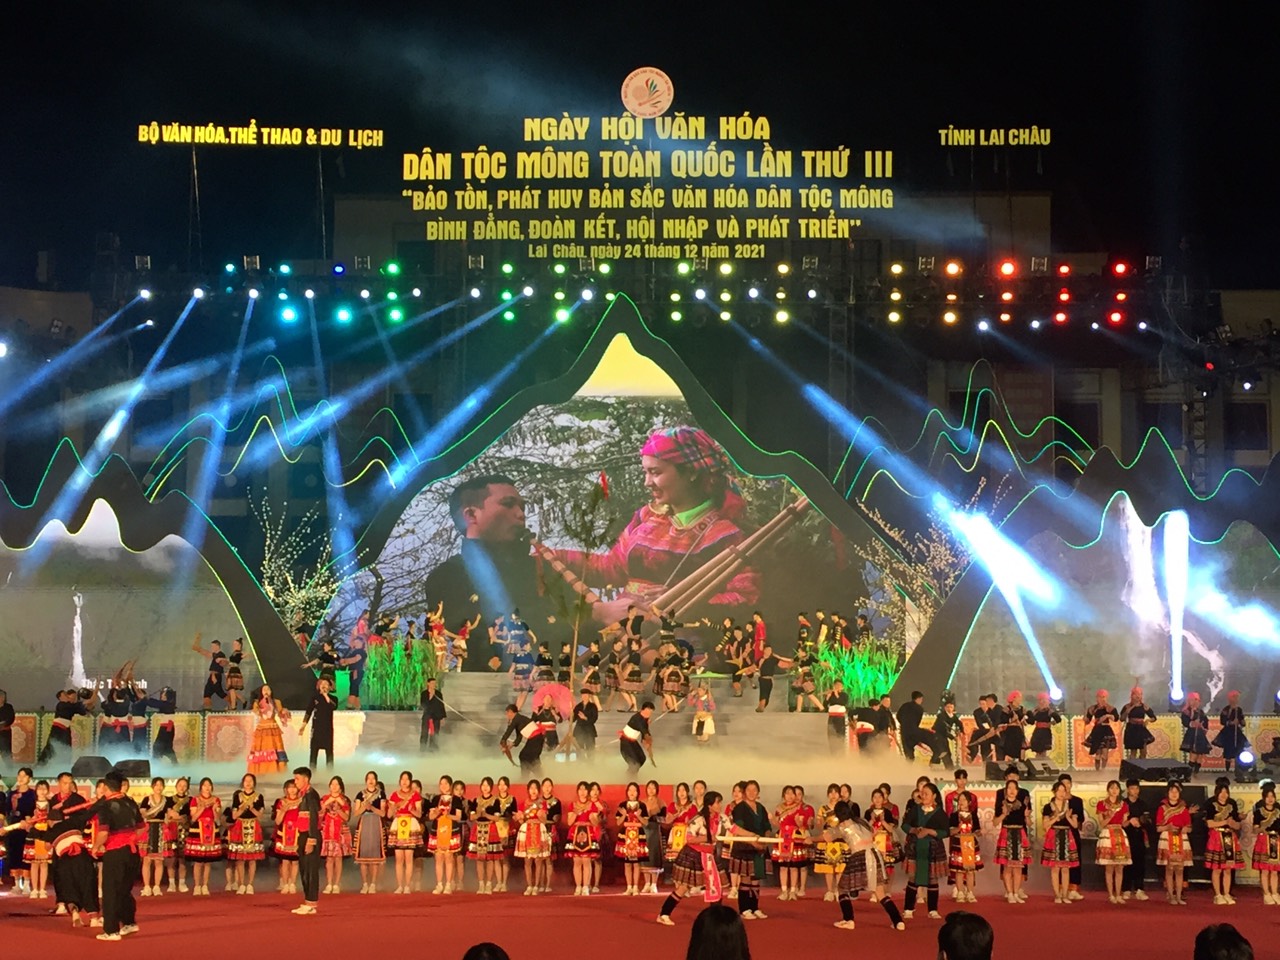 Ngày hội Văn hóa dân tộc Mông lần thứ III góp phần quảng bá và kích cầu du lịch tỉnh Lai Châu